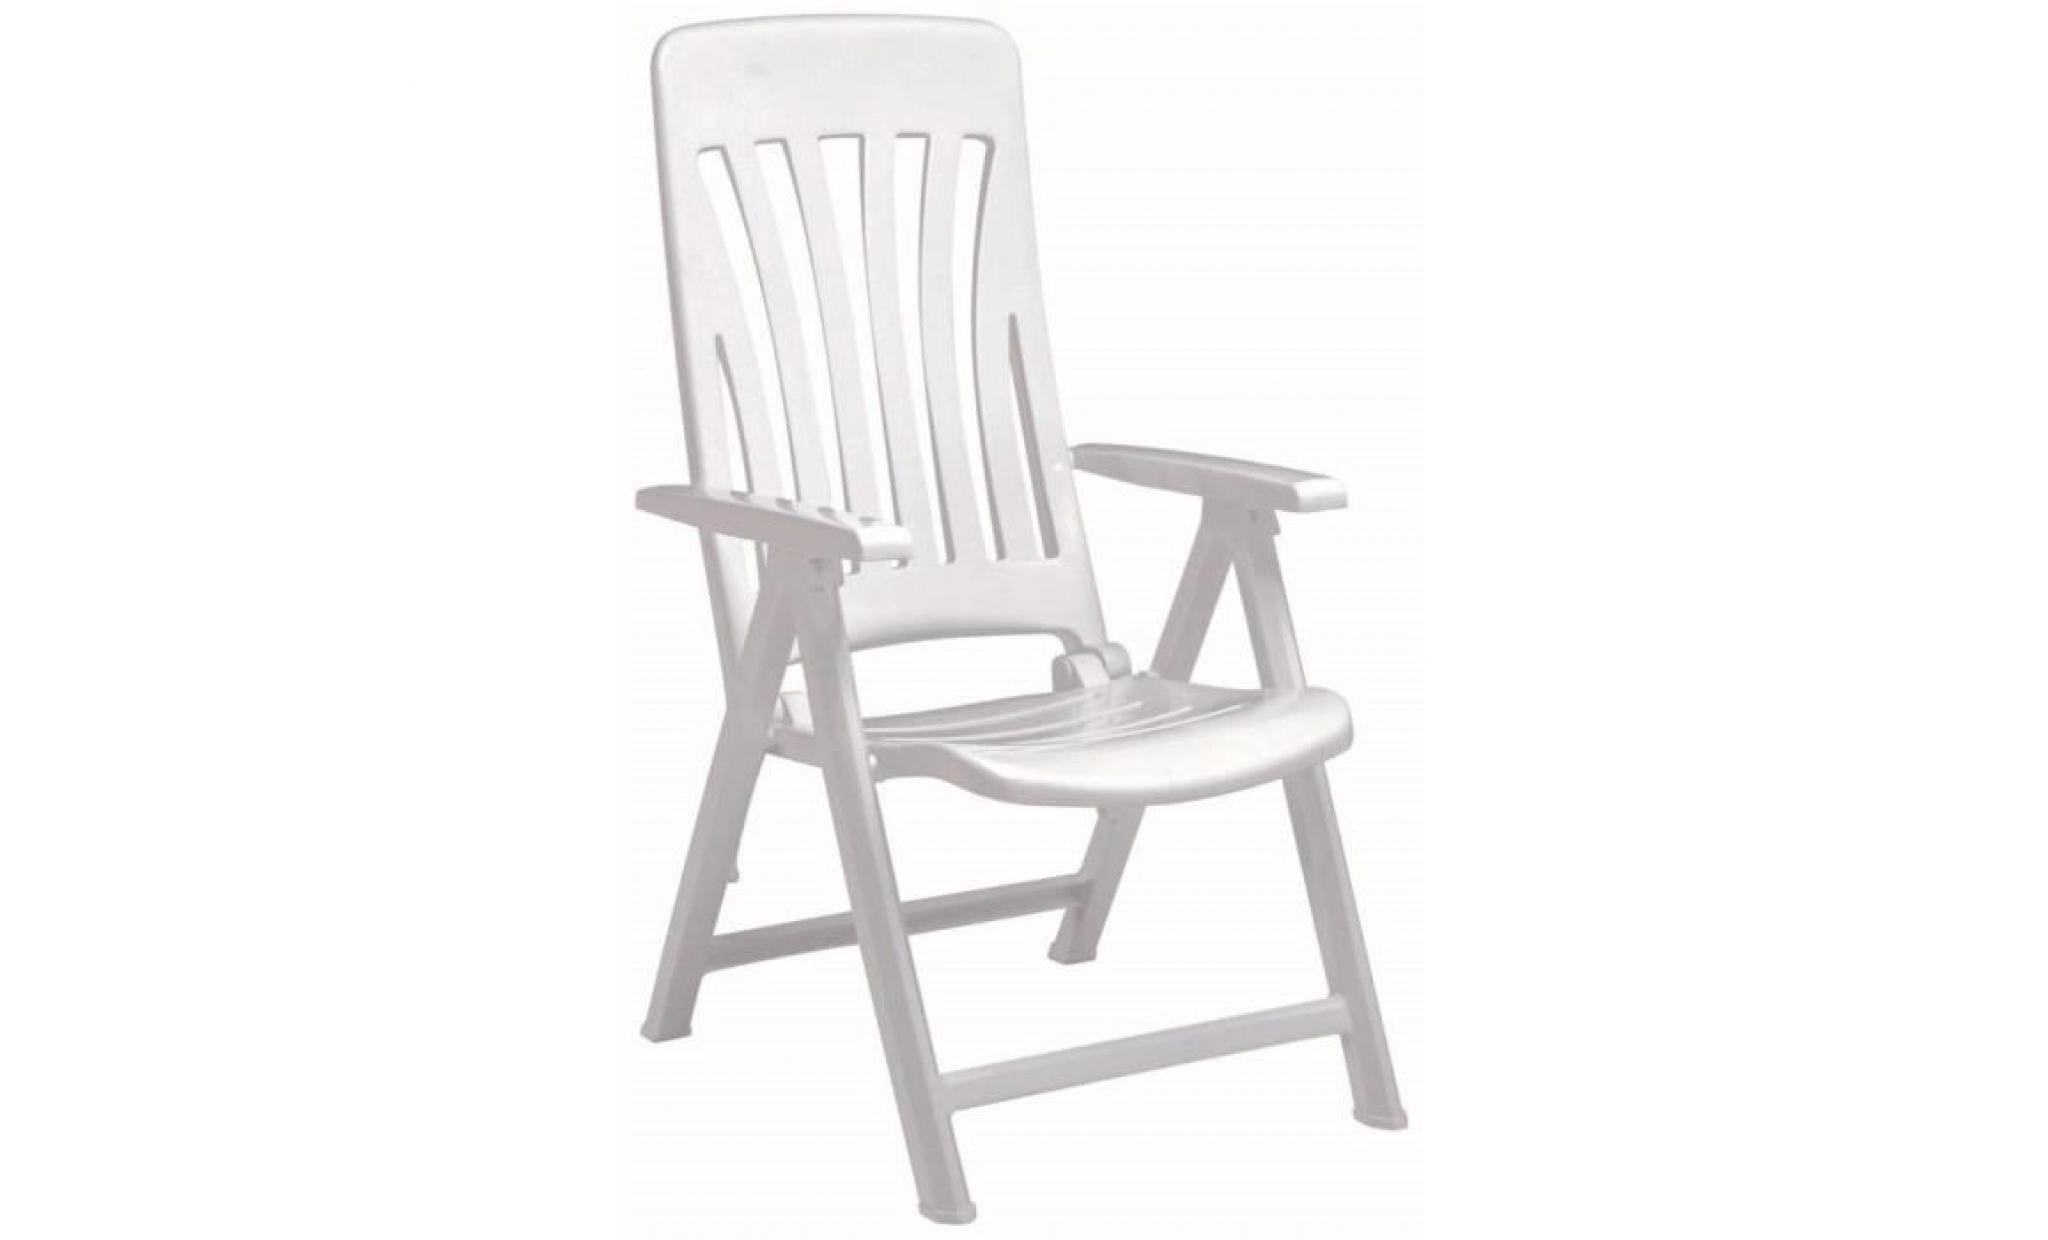 resol   blanes pliante de jardin multi positions fauteuil   blanc en plastique   paquet de 2 chaises